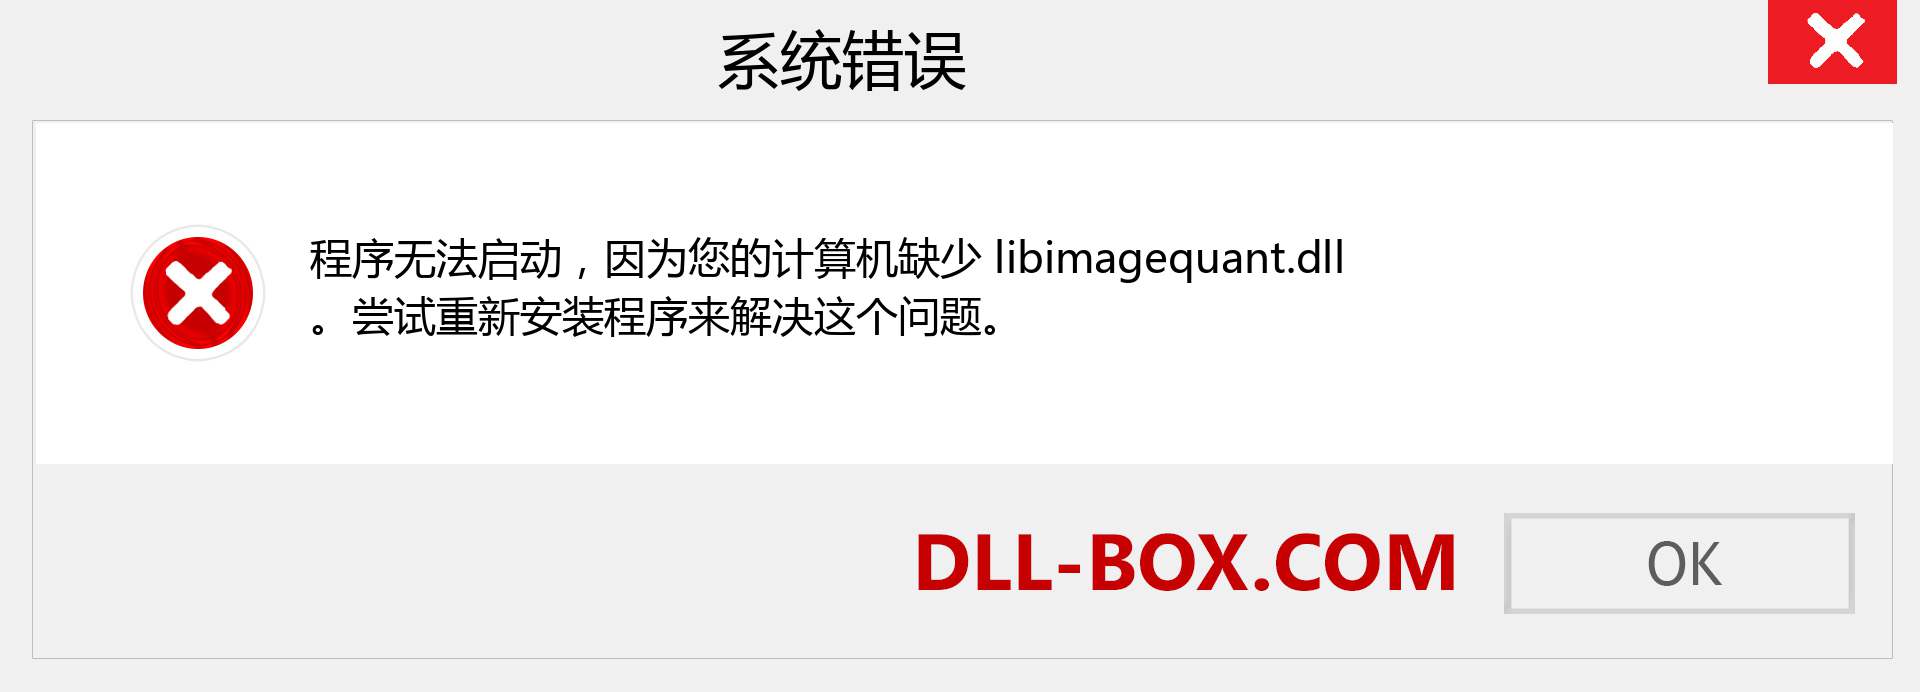 libimagequant.dll 文件丢失？。 适用于 Windows 7、8、10 的下载 - 修复 Windows、照片、图像上的 libimagequant dll 丢失错误